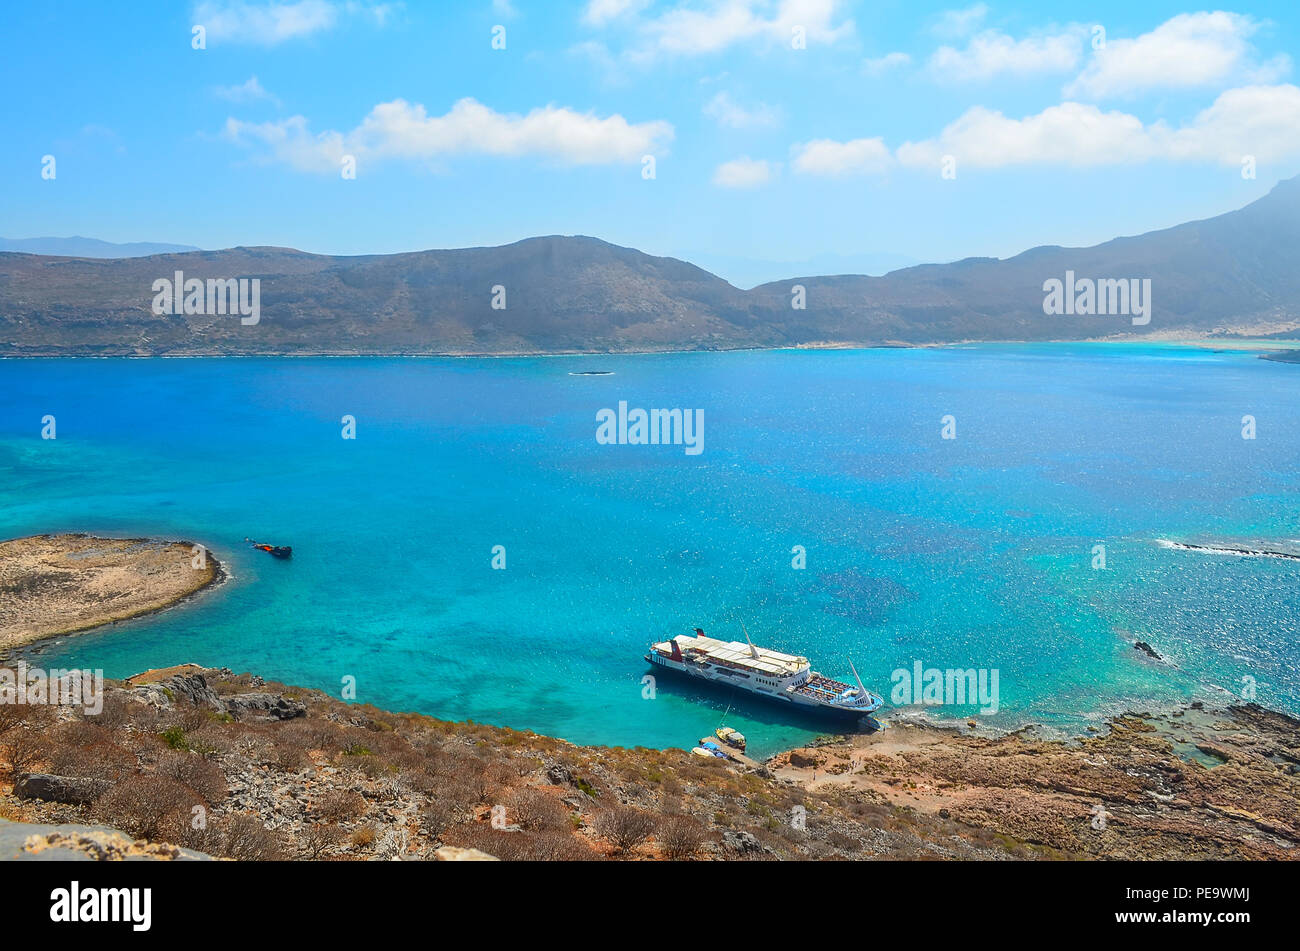 Una barca di piacere in una pittoresca baia sul Mare Mediterraneo, vista dall'alto. Baia di Balos vicino l'isola greca Gramvous Foto Stock